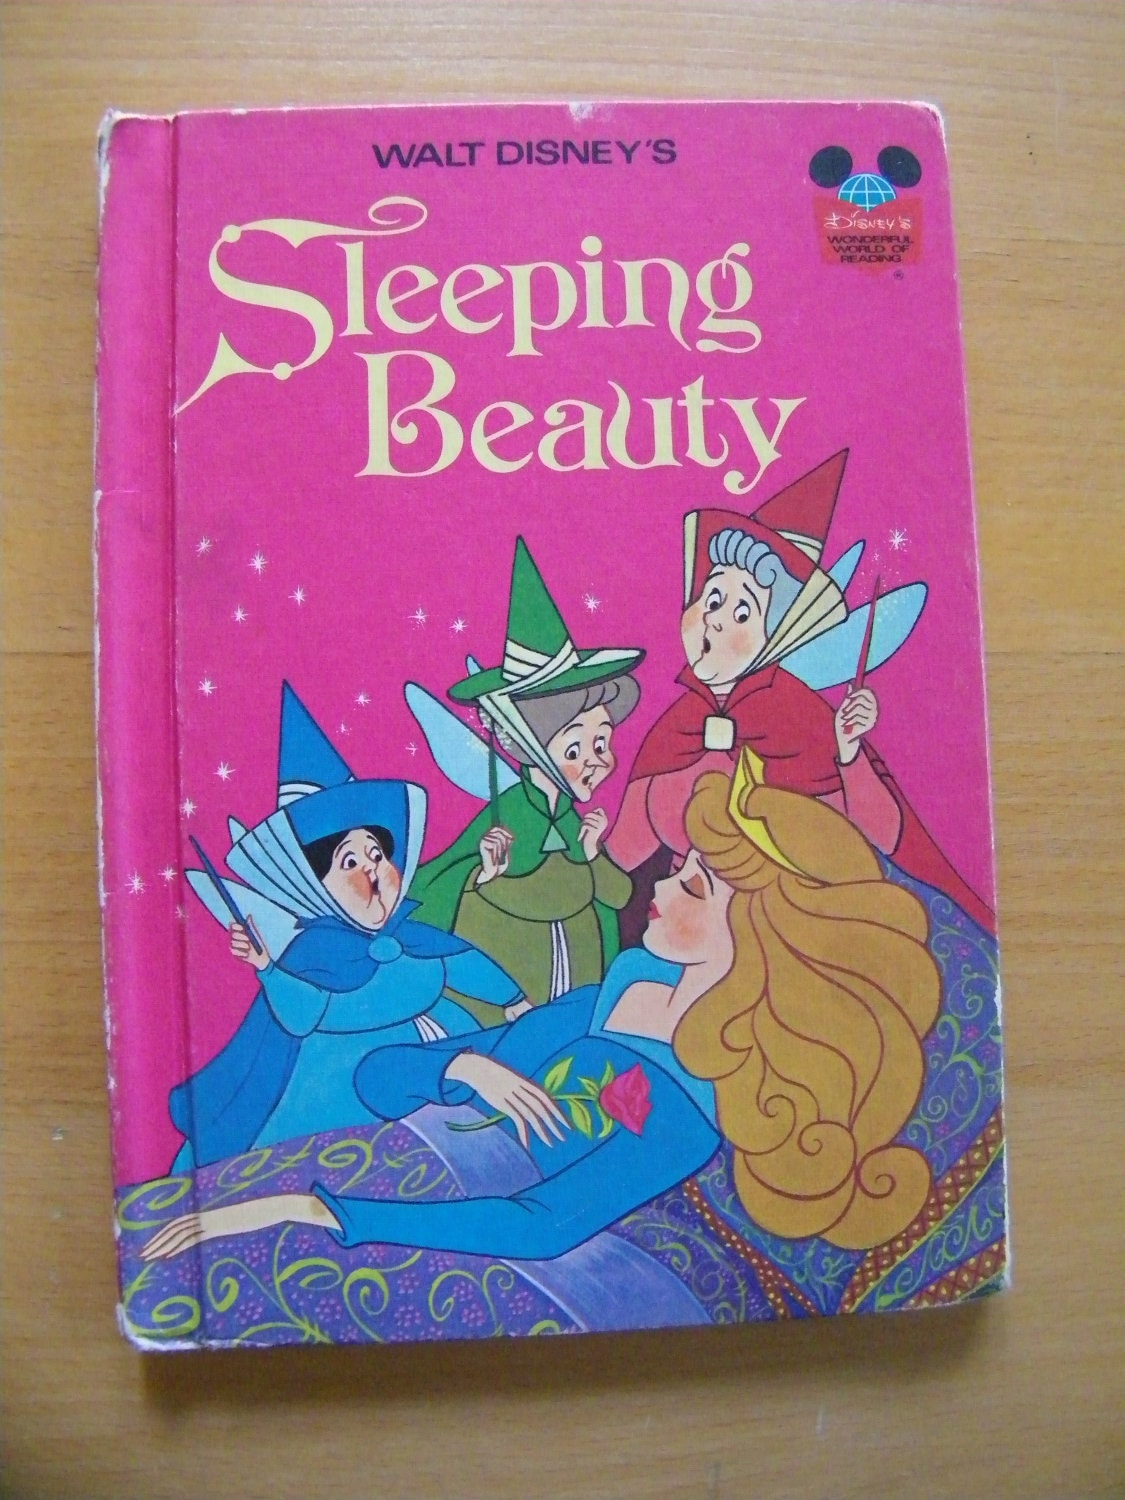 Sleeping Beauty 1974 by Walt Disney Book by THEITGIRLSHOP on Etsy